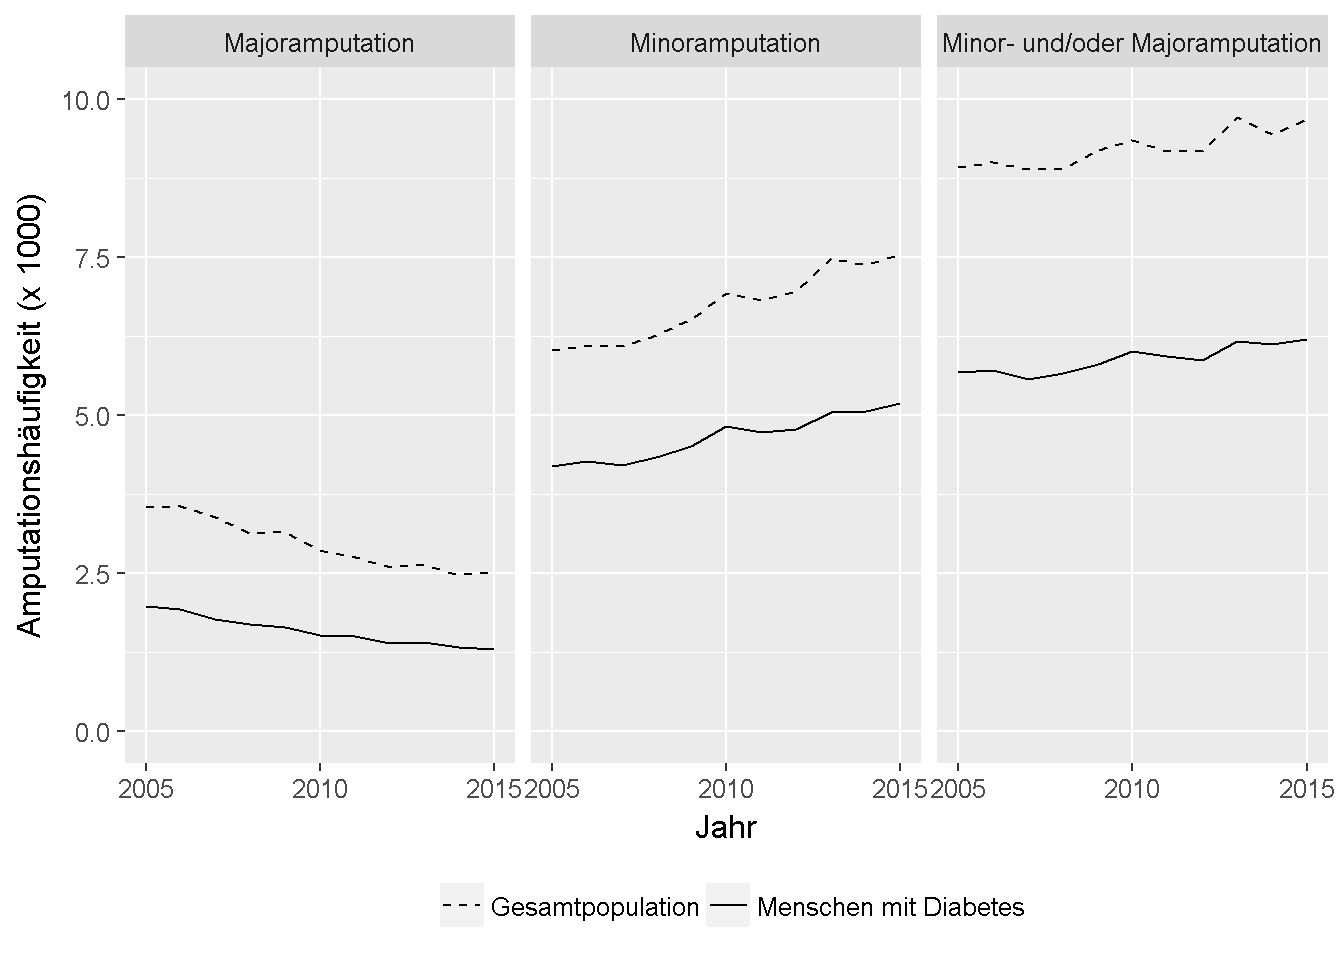 Anzahl der abgerechneten Amputationen in Bayern in den Jahren 2005 bis 2015, unter Berücksichtigung der Gesamtbevölkerung (gestrichelte Linie) und Patienten mit einer bekannten Diabeteserkrankung (durchgezogene Linie).